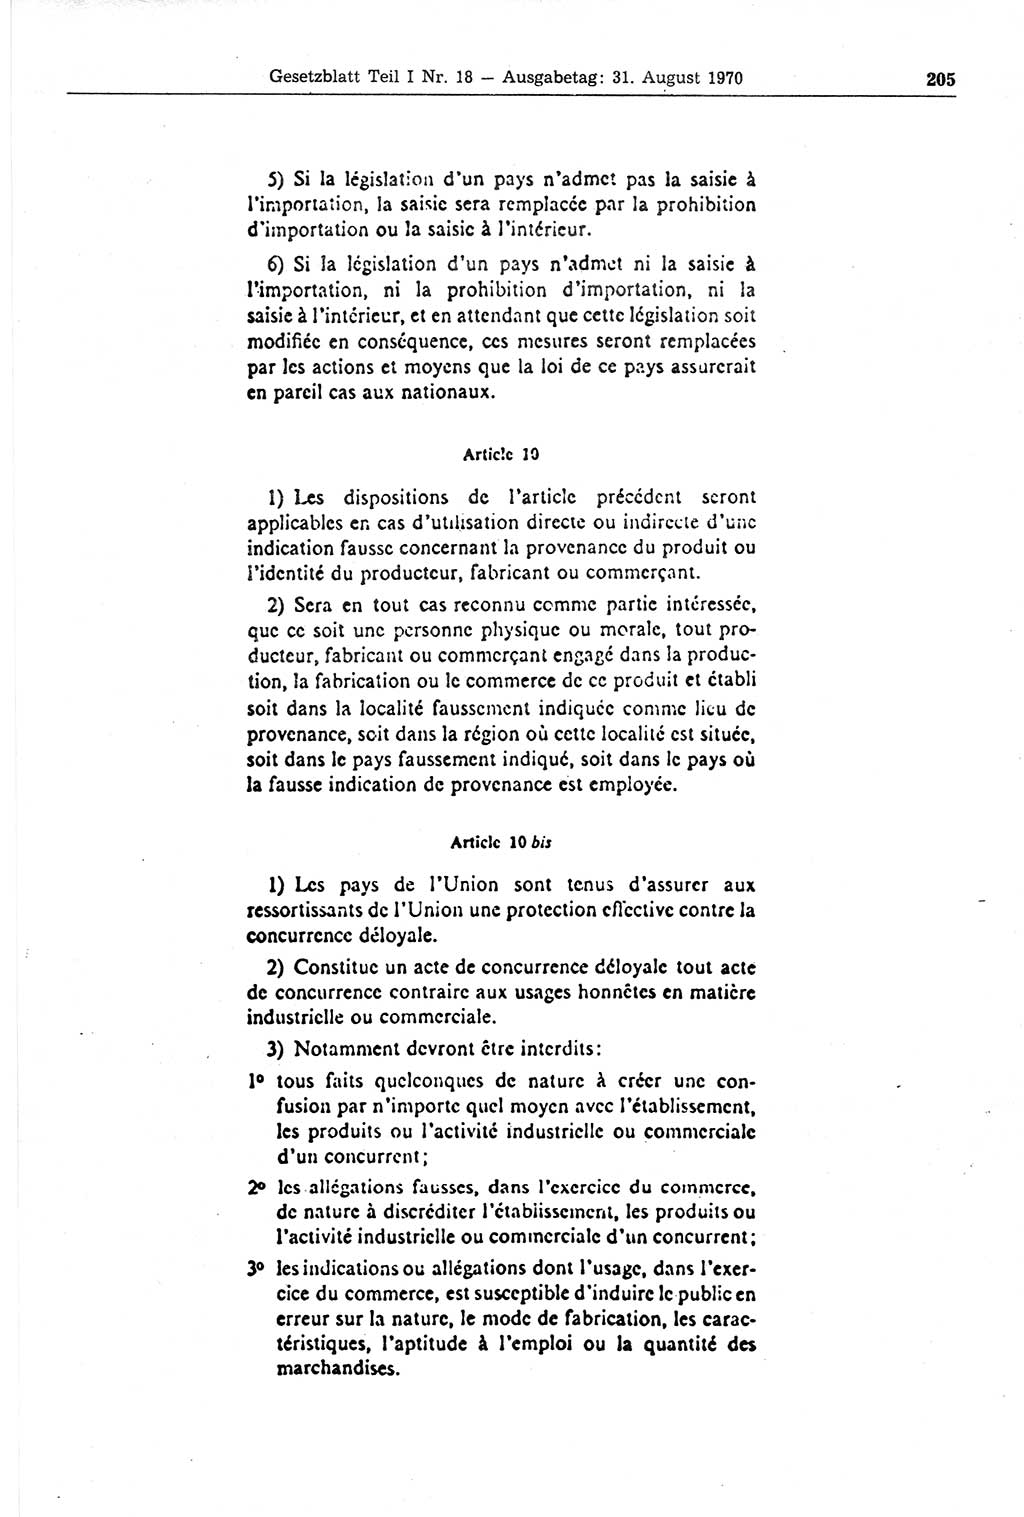 Gesetzblatt (GBl.) der Deutschen Demokratischen Republik (DDR) Teil Ⅰ 1970, Seite 205 (GBl. DDR Ⅰ 1970, S. 205)